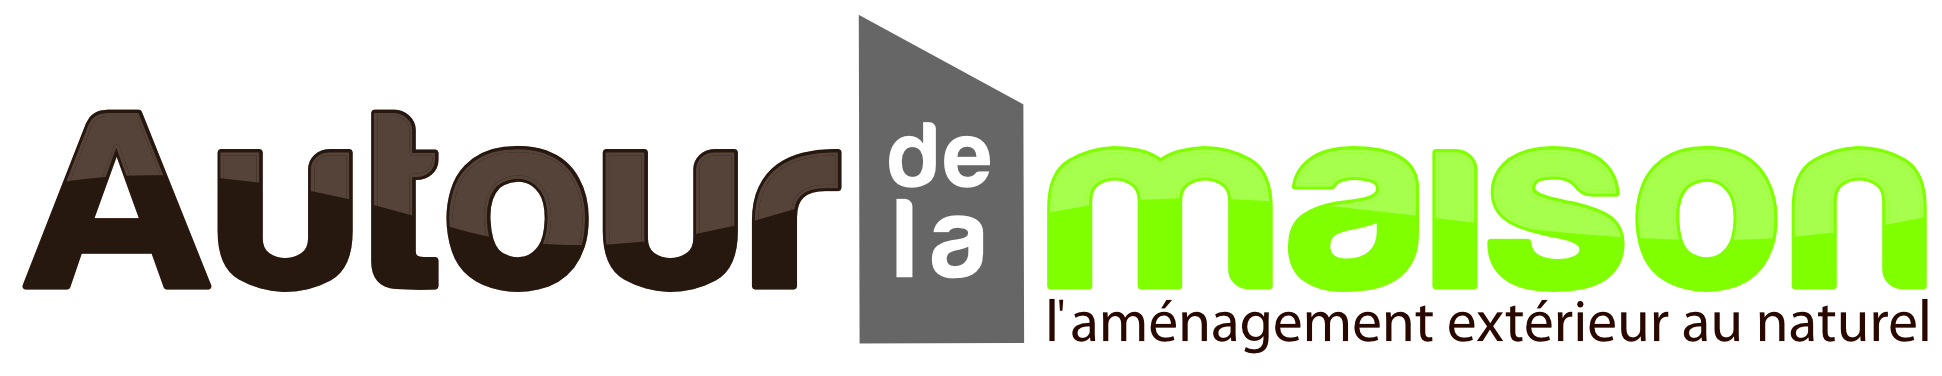 CSS/Image/Partenaires/ADLM-logo-couleur-horizontal.jpg